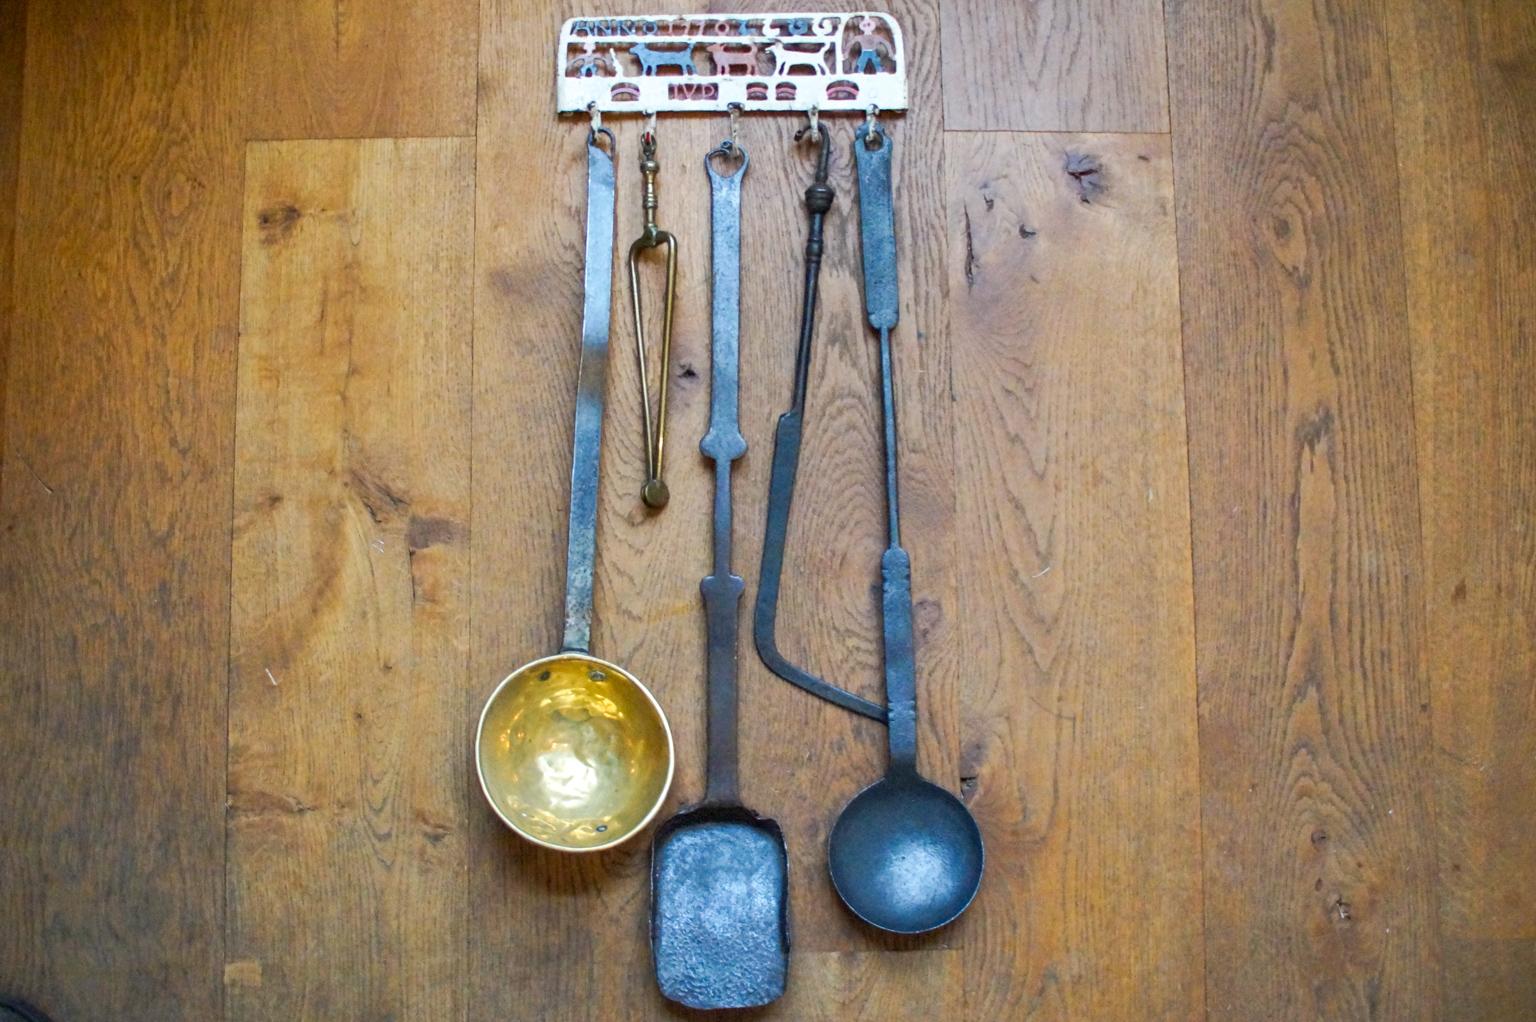 18th century kitchen tools